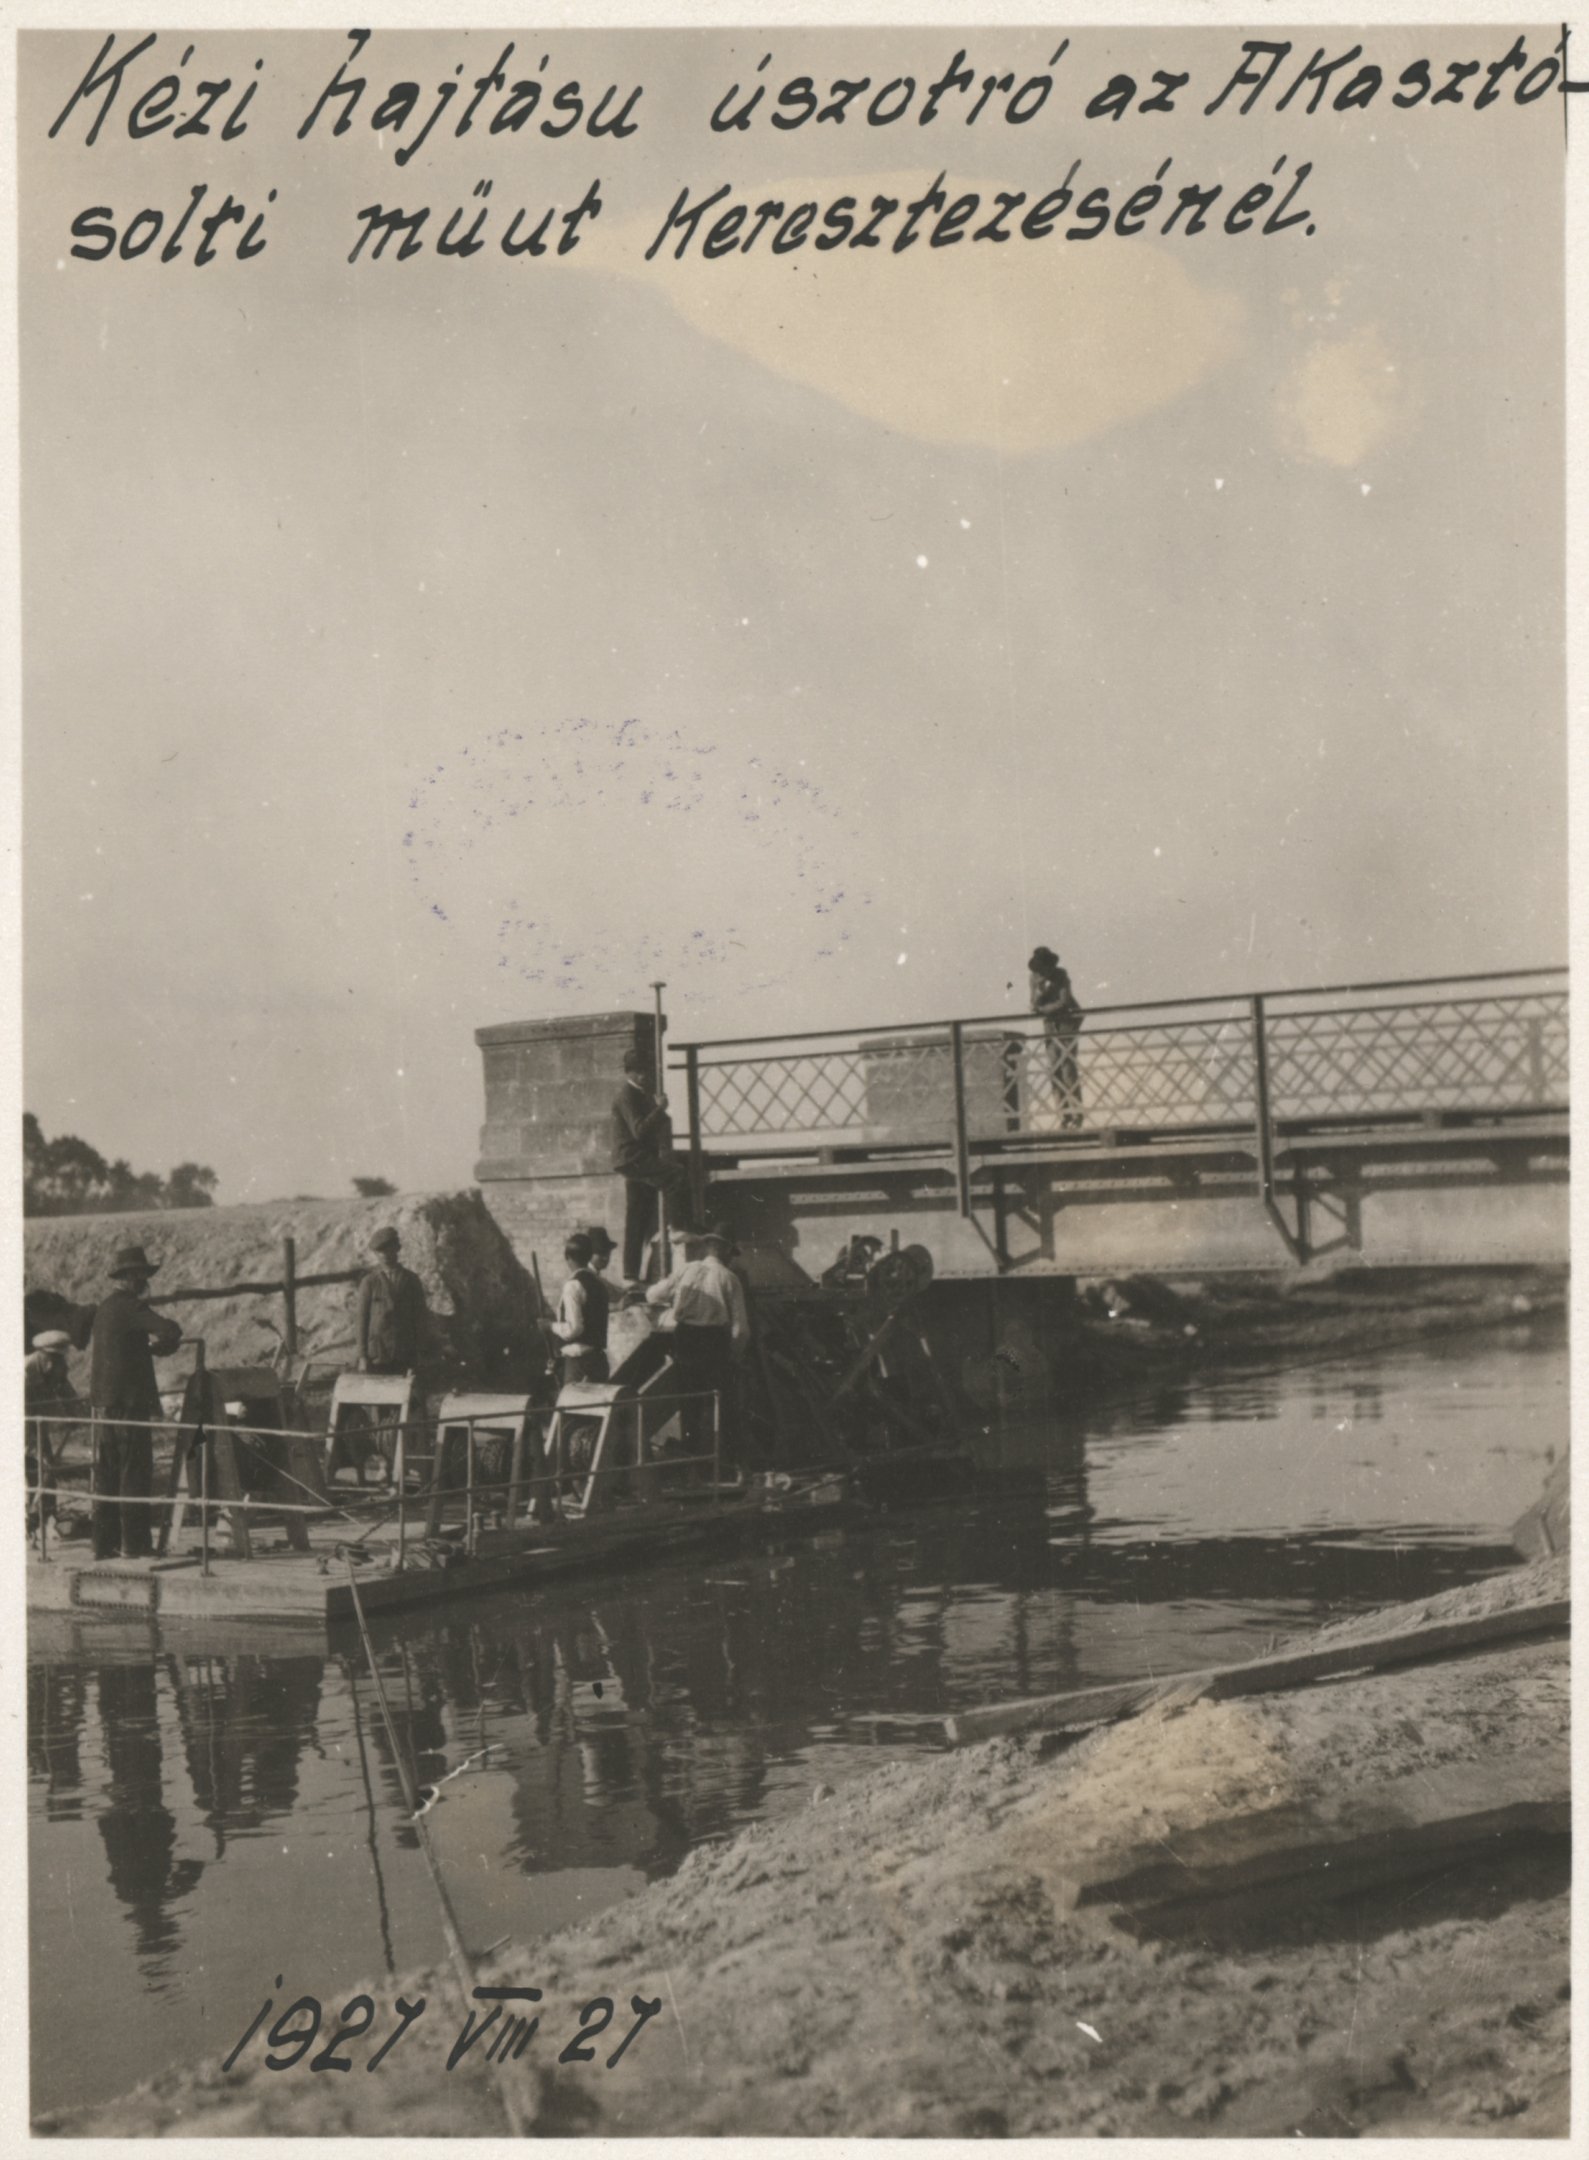 Kézi hajtású úszókotró az Akasztó-solti műút keresztezésénél, 1927. augusztus 27. (Magyar Környezetvédelmi és Vízügyi Múzeum - Duna Múzeum CC BY-NC-SA)